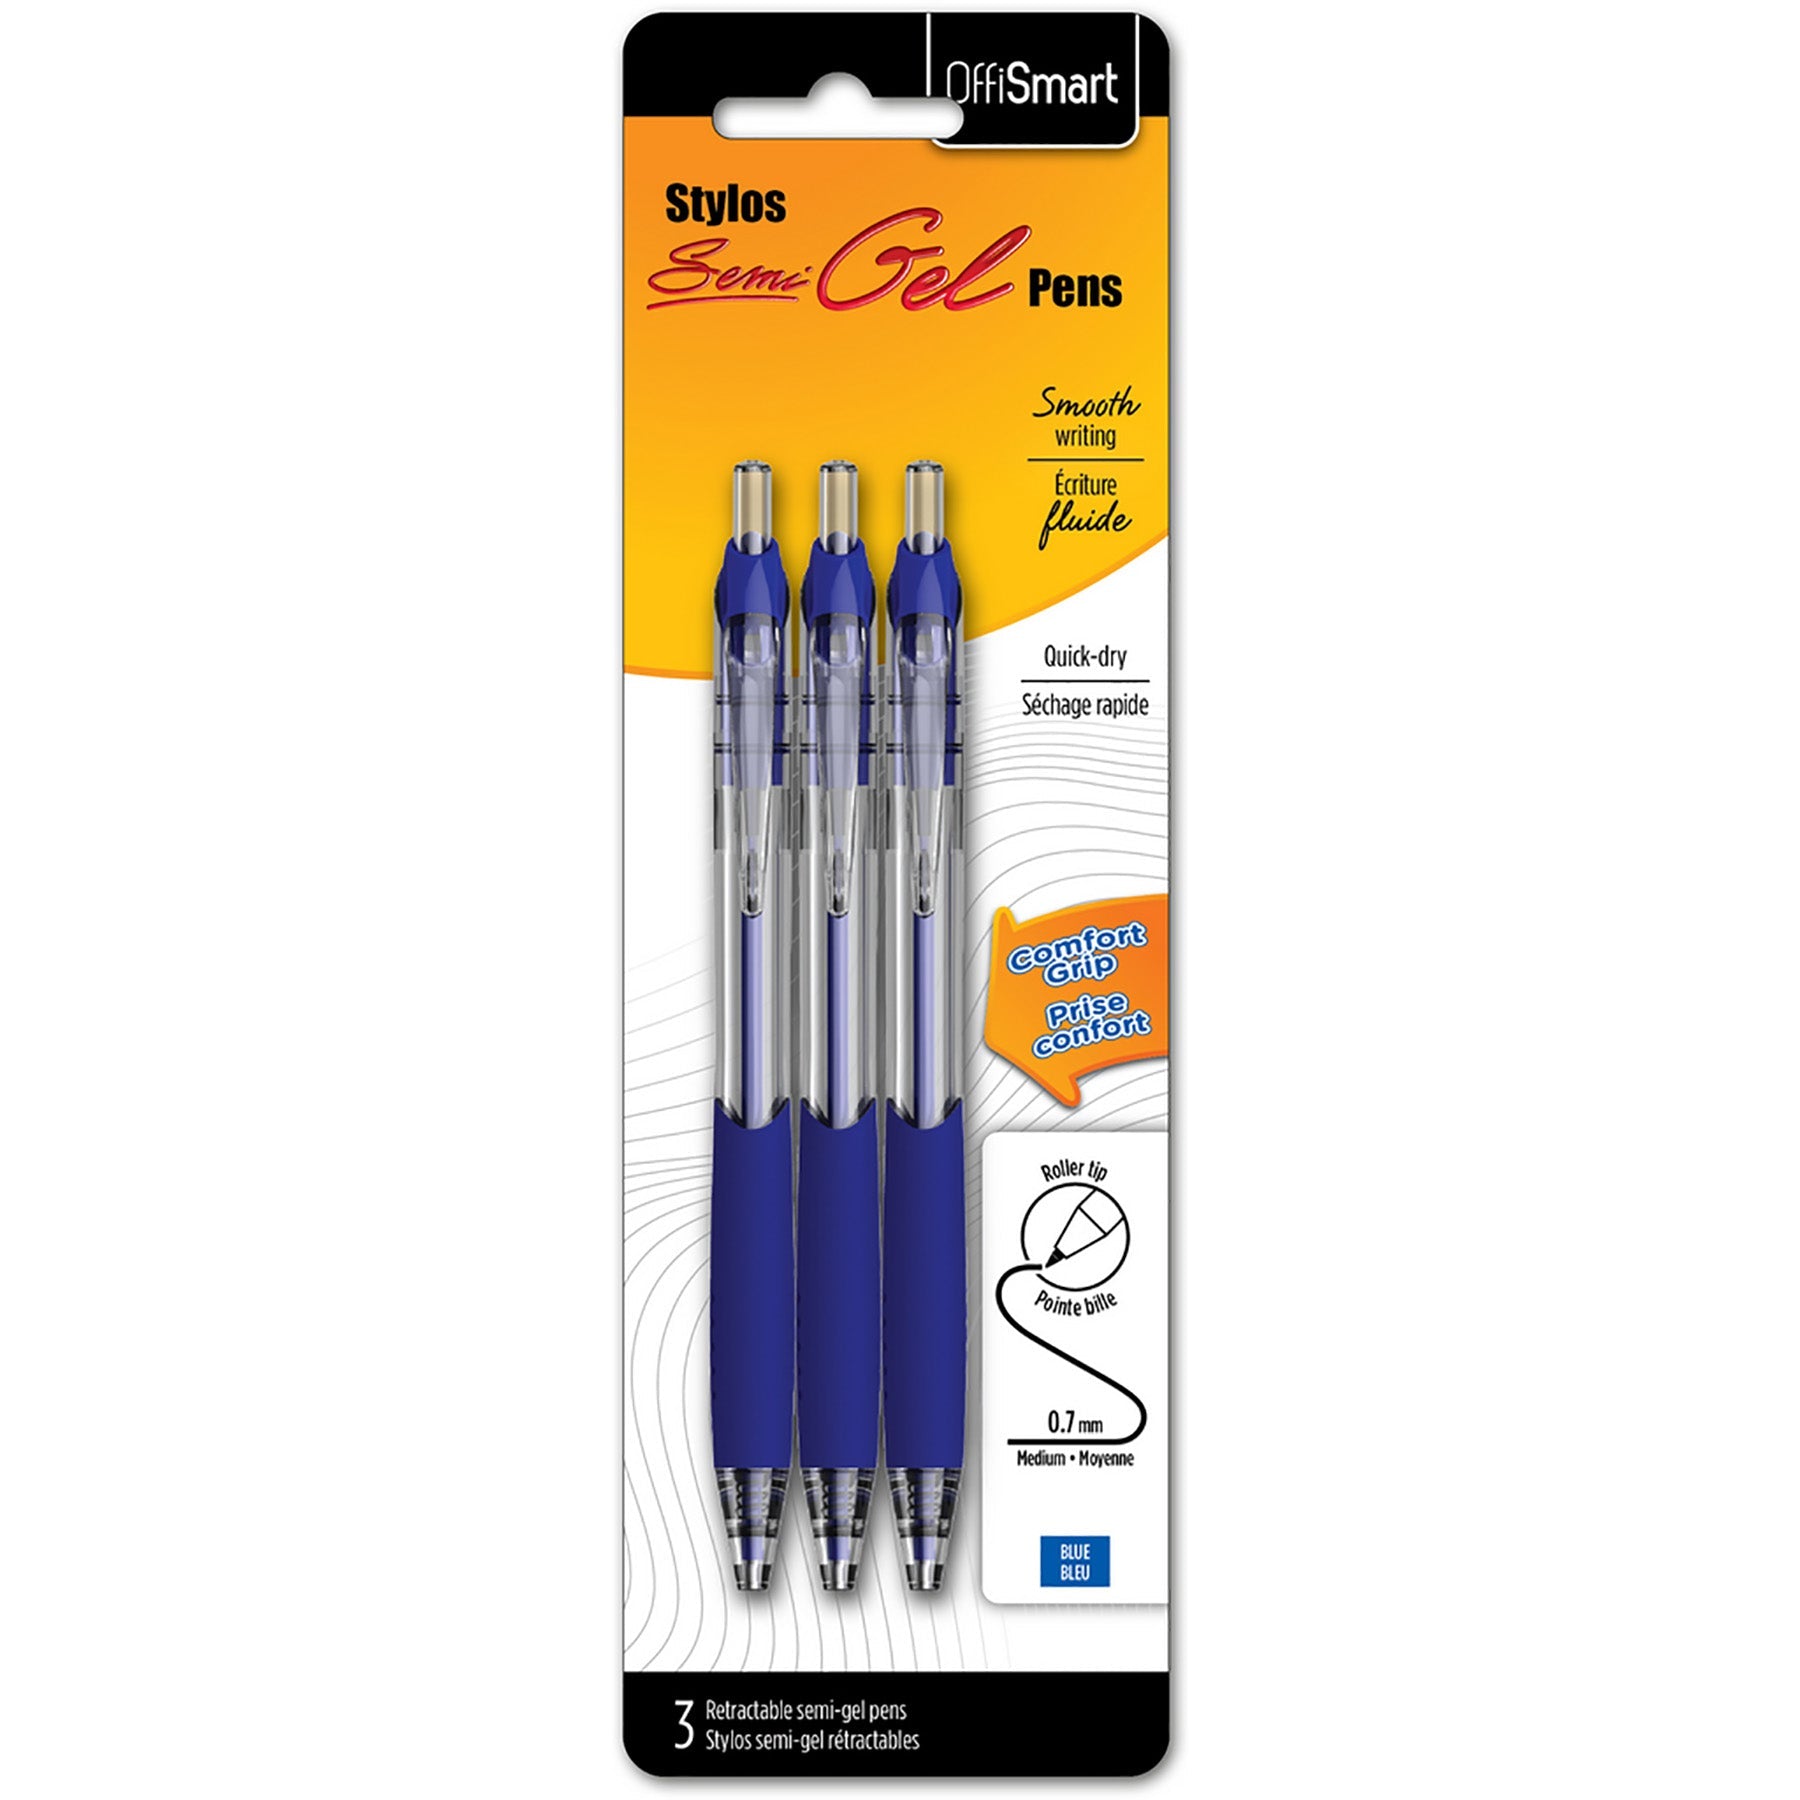 Offismart 3 Smooth Gel Retractable Pens Blue Ink 0.7mm